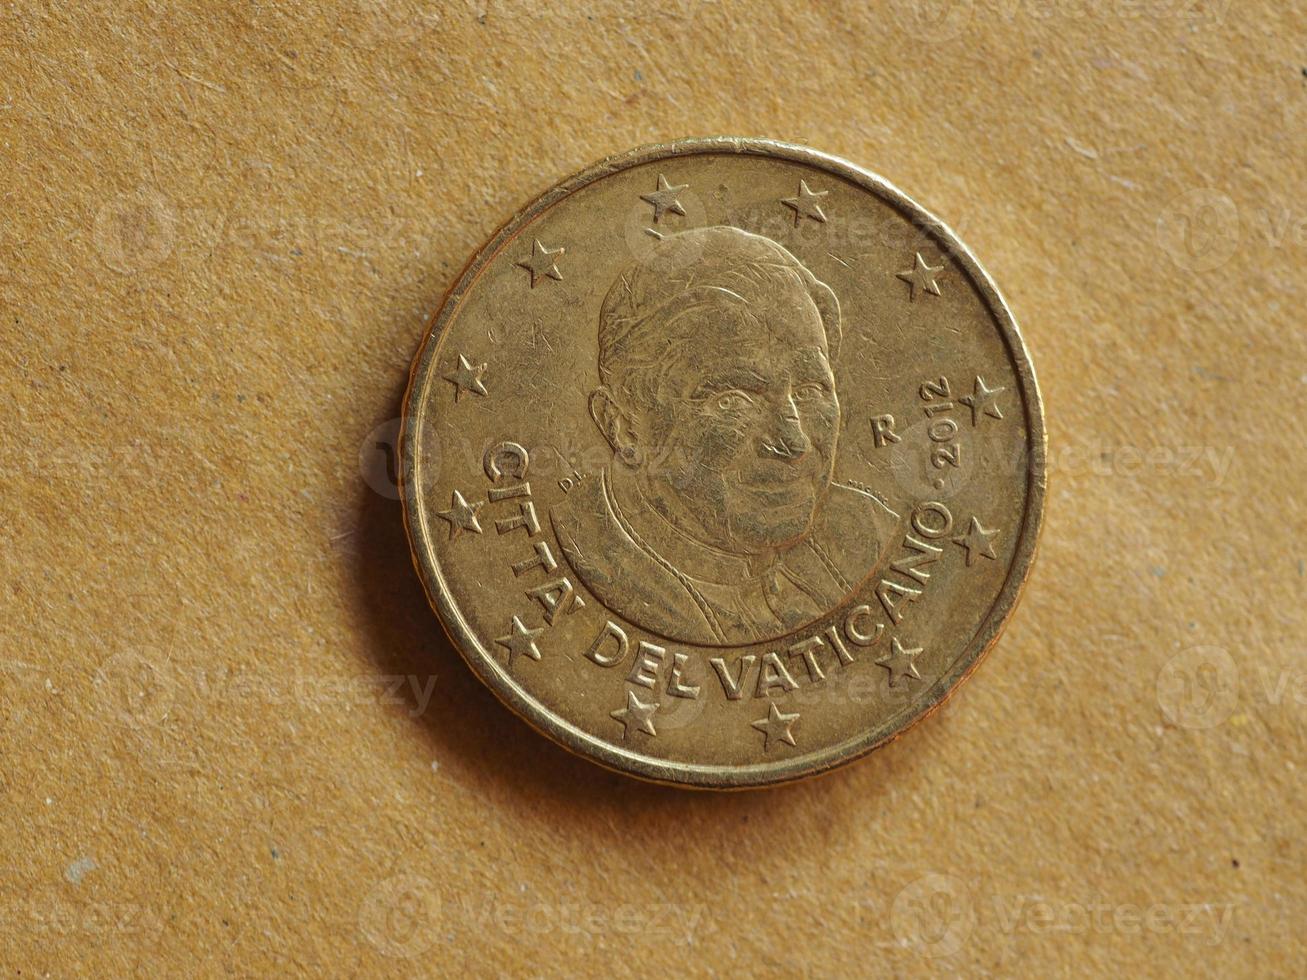 50 cent munt, europese unie foto